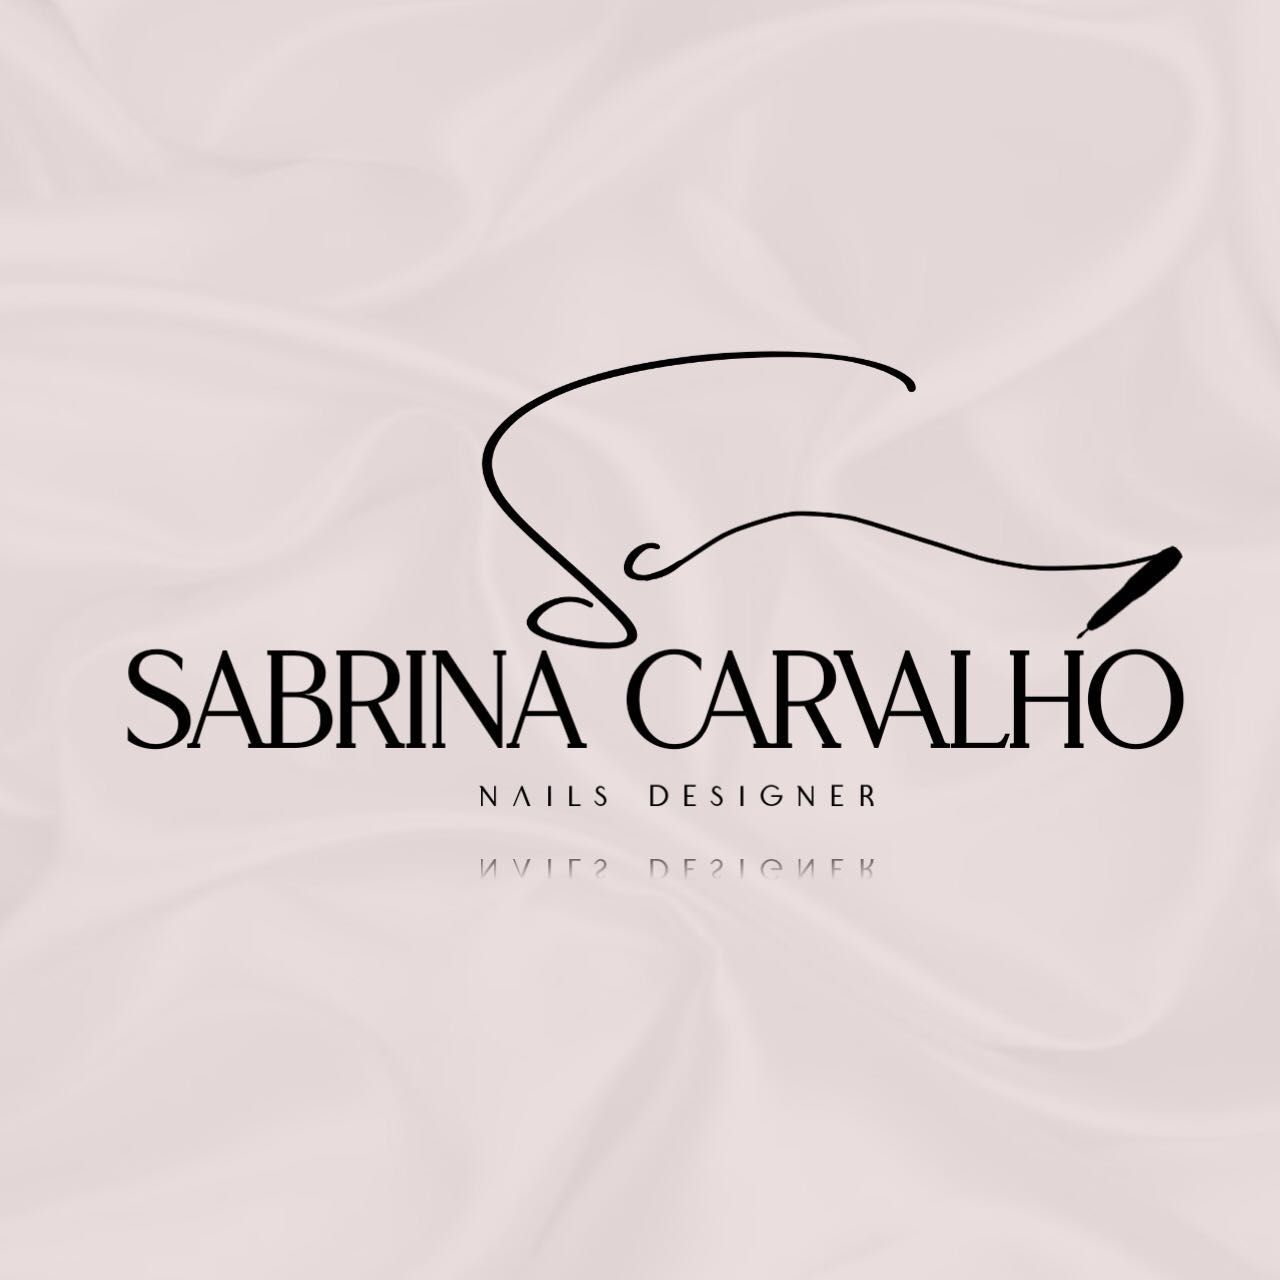 Sabrina Carvalho Nails Designer, 5710 NW 74th Pl, Apt 107 senha do portão 0085, Coconut Creek, 33073